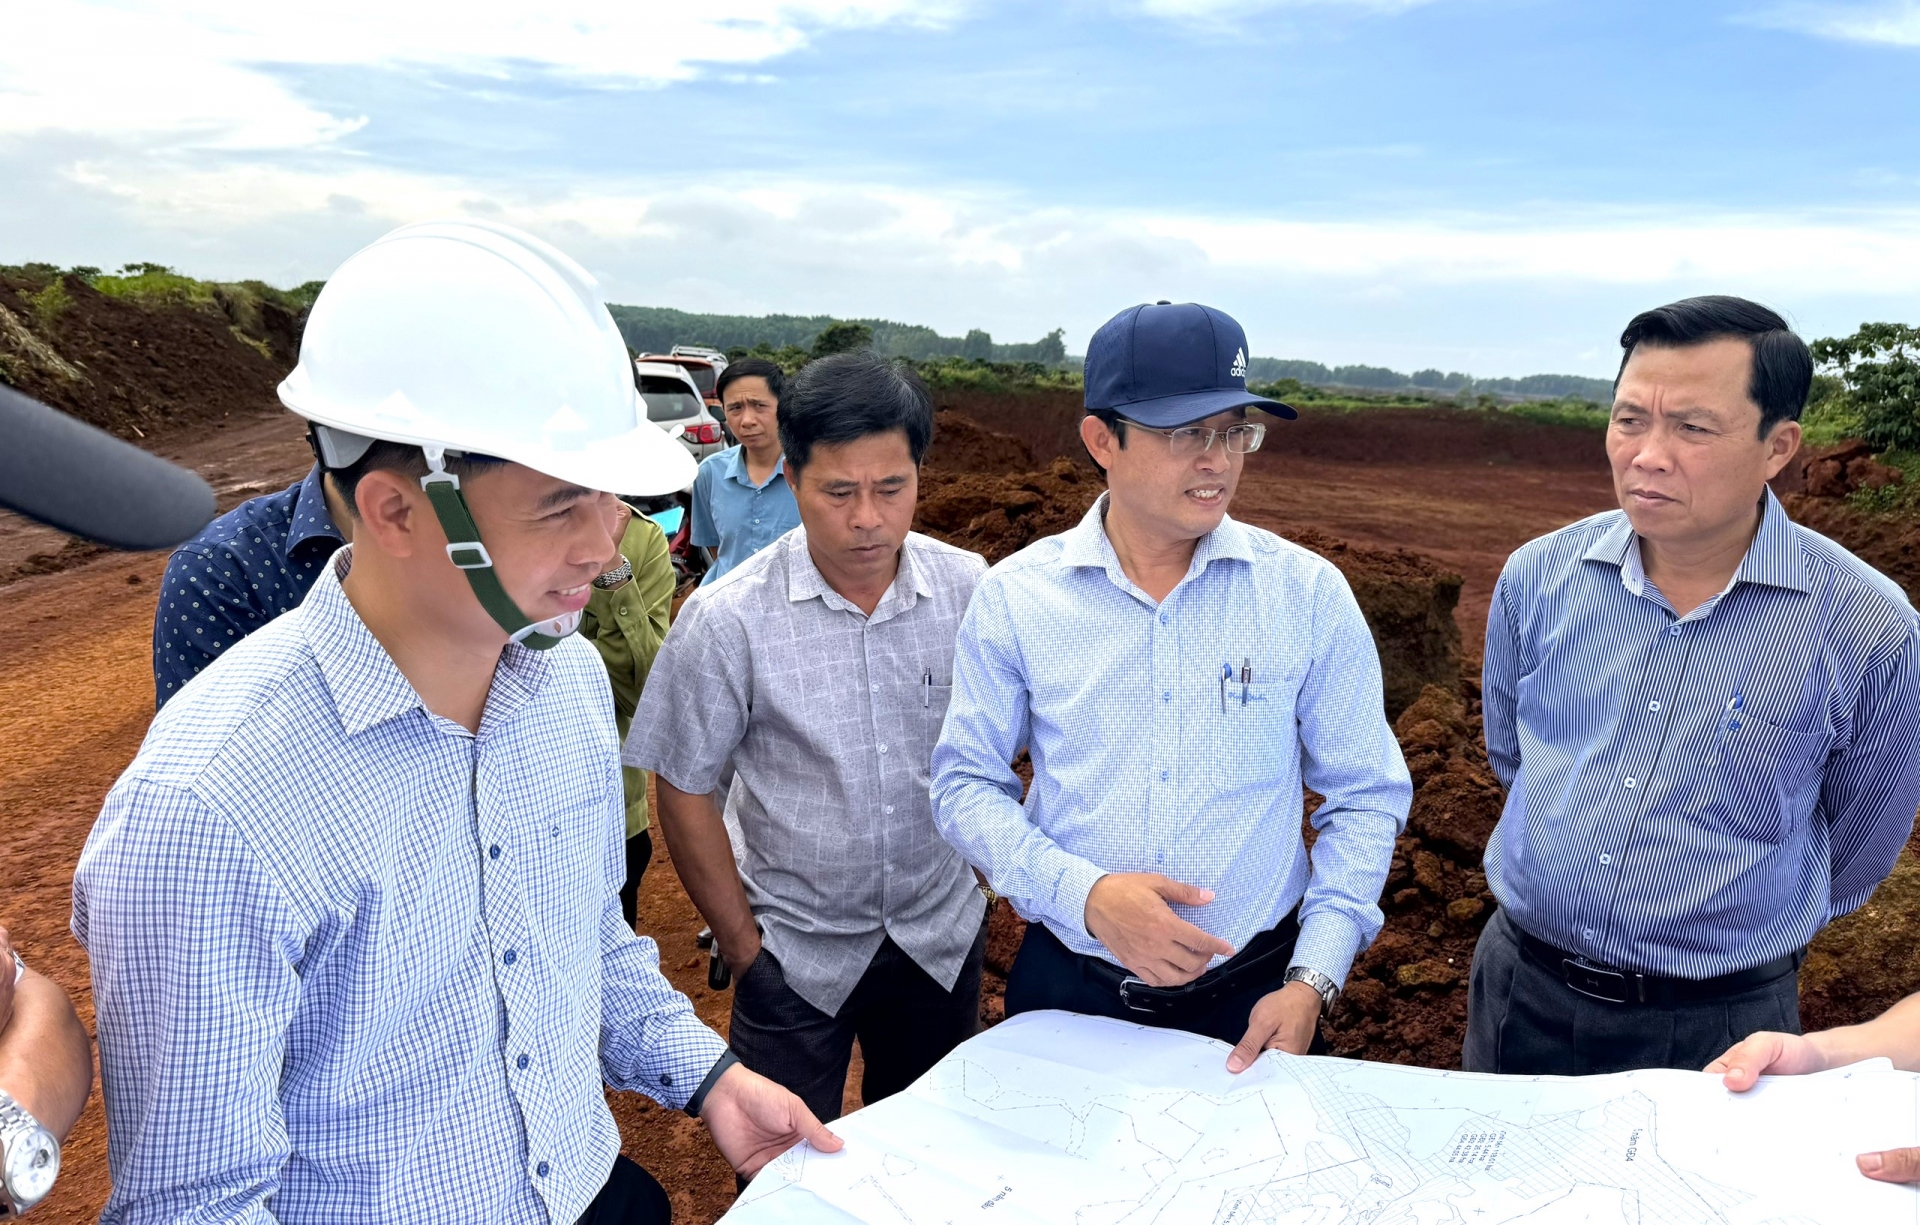 Lãnh đạo huyện Bảo Lâm và Công ty Nhôm Lâm Đồng kiểm tra thực tế hiện trạng khu vực khai thác quặng để tìm phương án giải quyết, khắc phục khó khăn